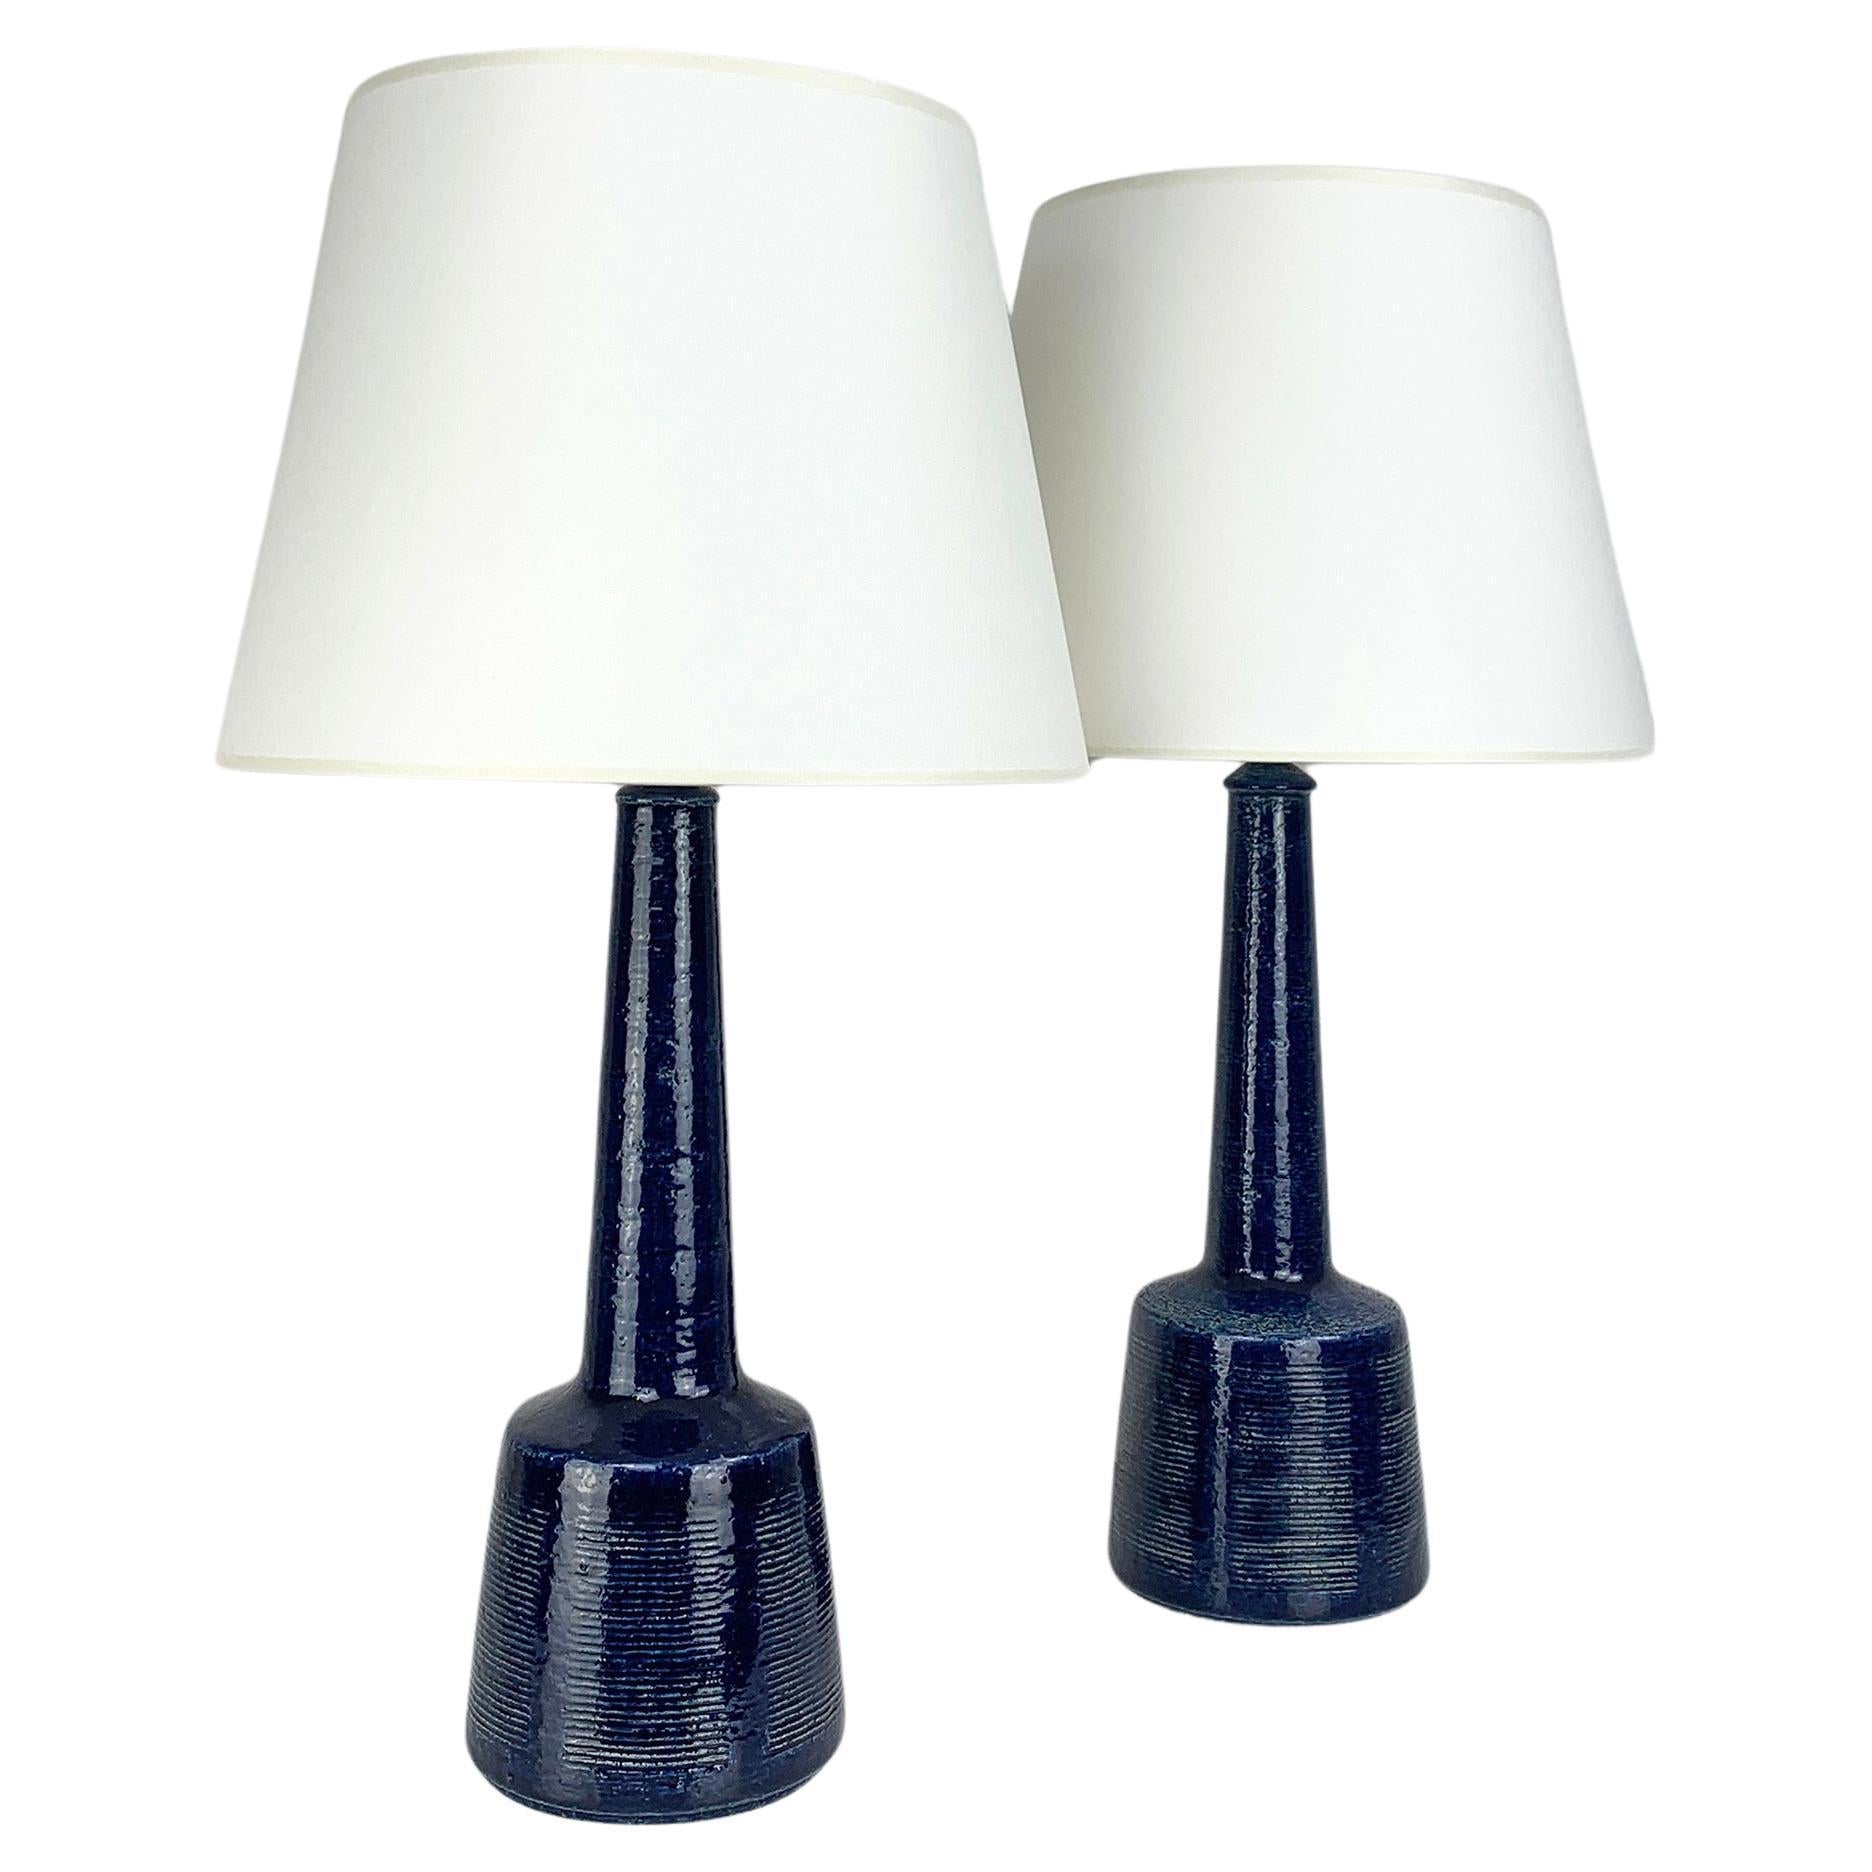 Le Klint Table Lamps